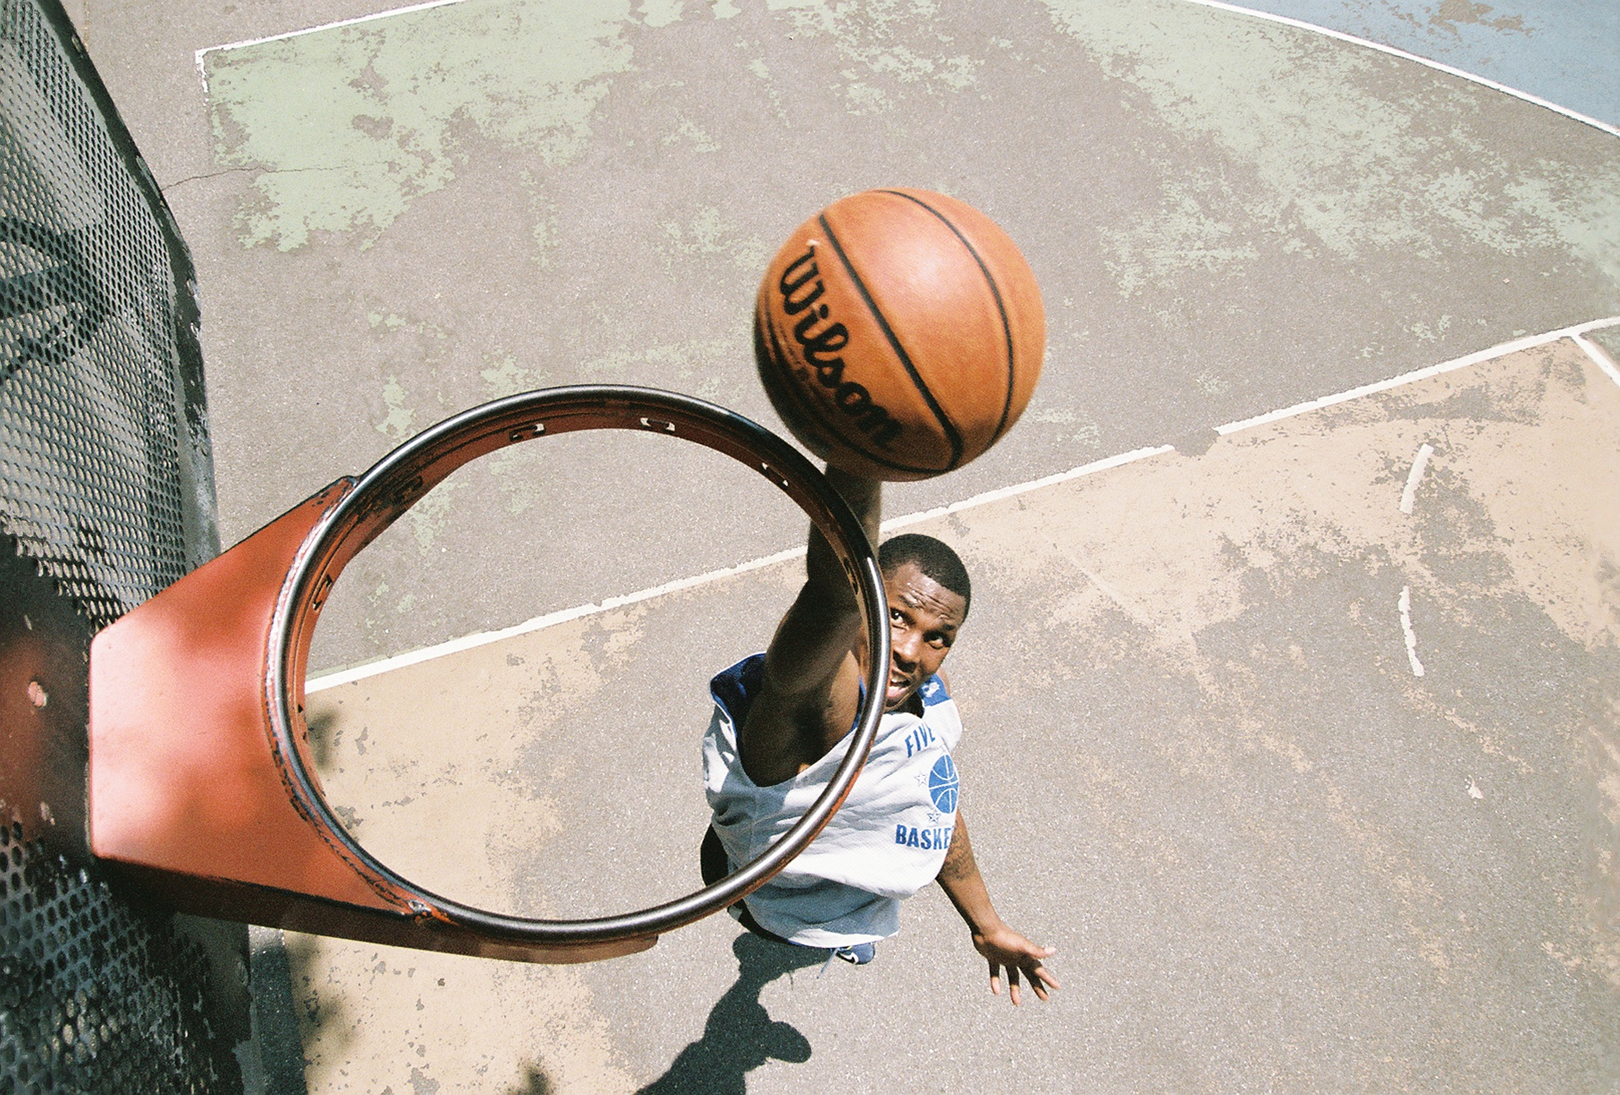 플레이어가 농구대를 통해 농구를 덩크하려고하는 그물이없는 농구대 위에서 본 모습